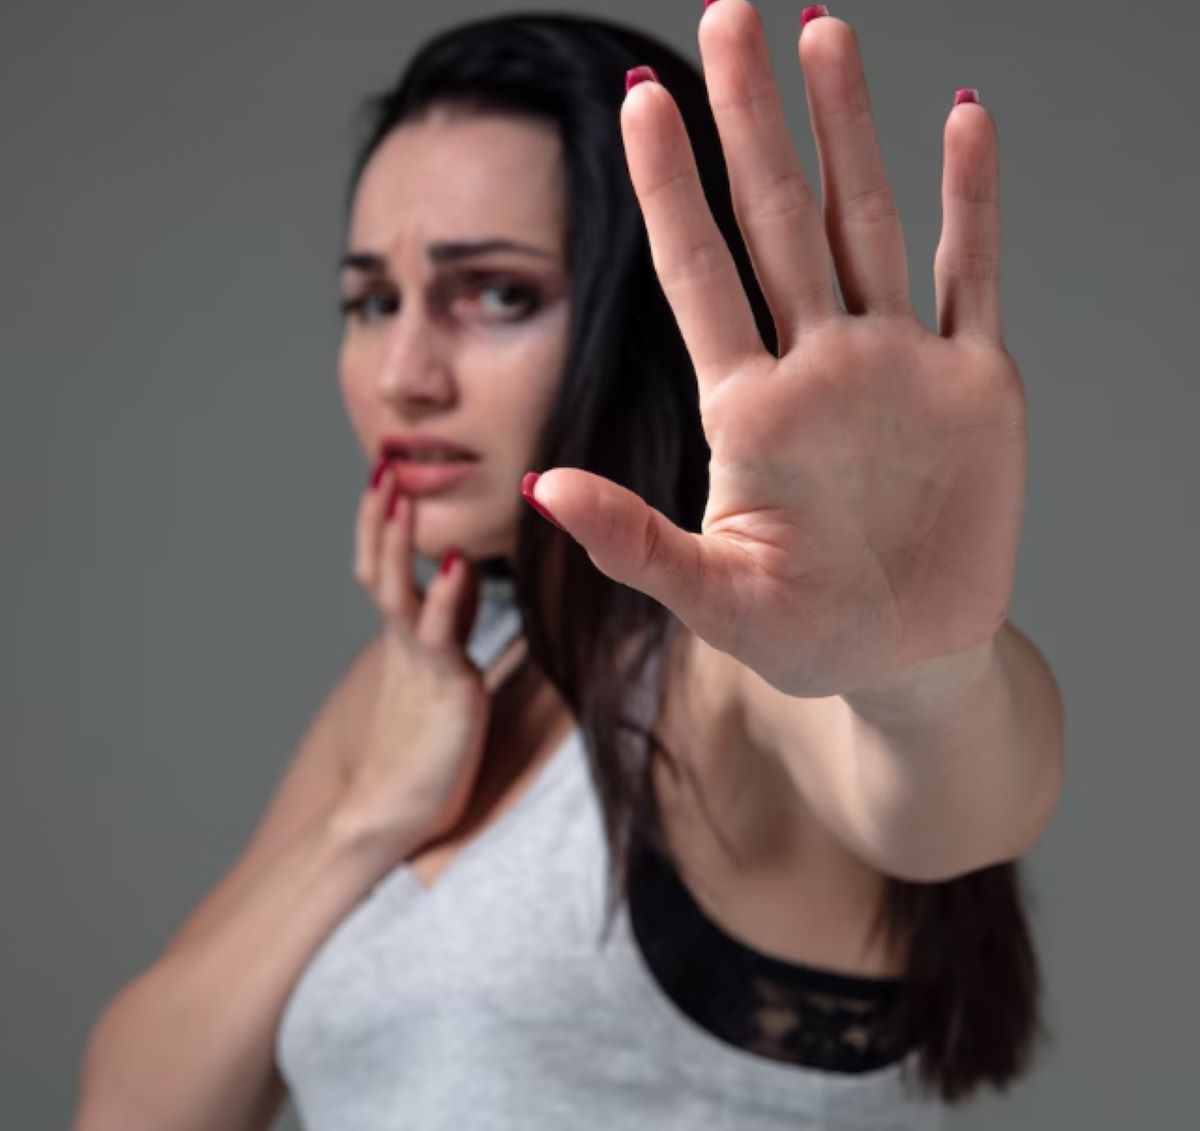  vitima-violencia-domestica-depoimento 